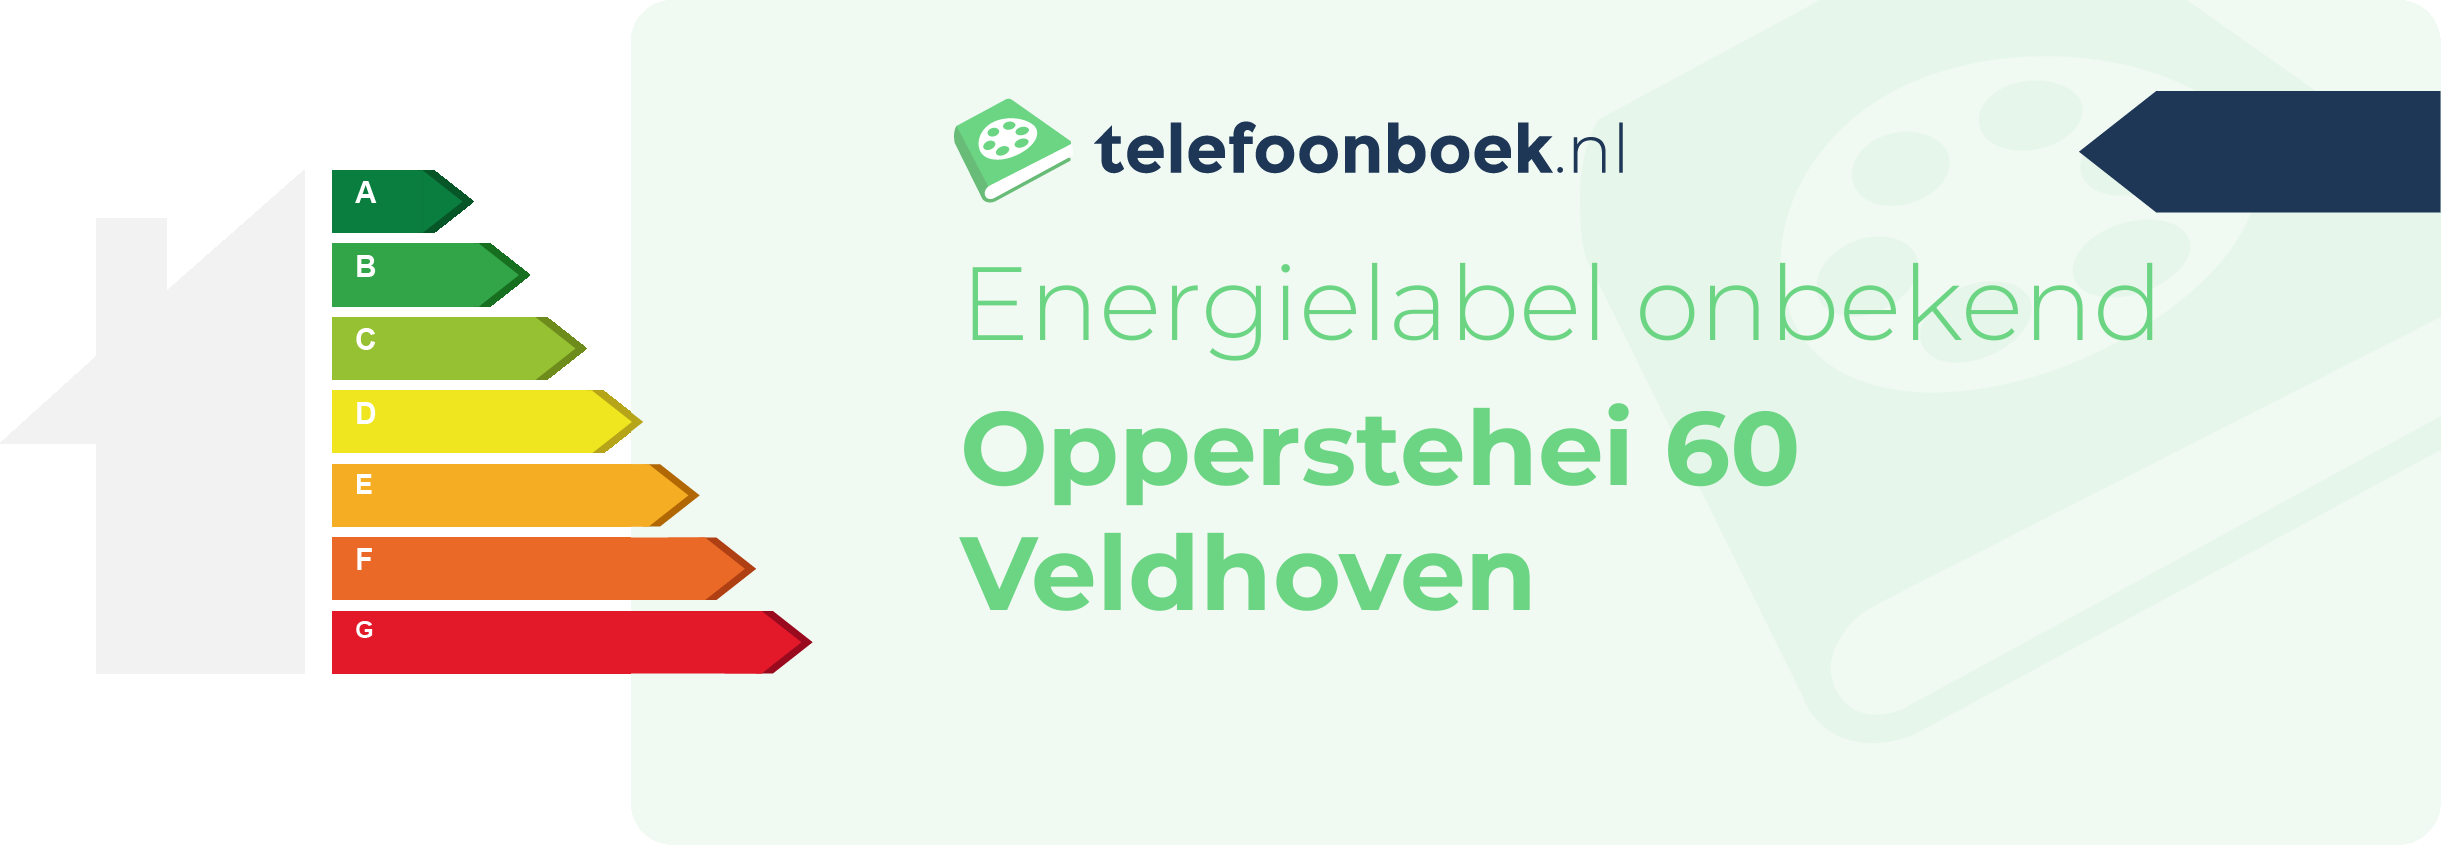 Energielabel Opperstehei 60 Veldhoven